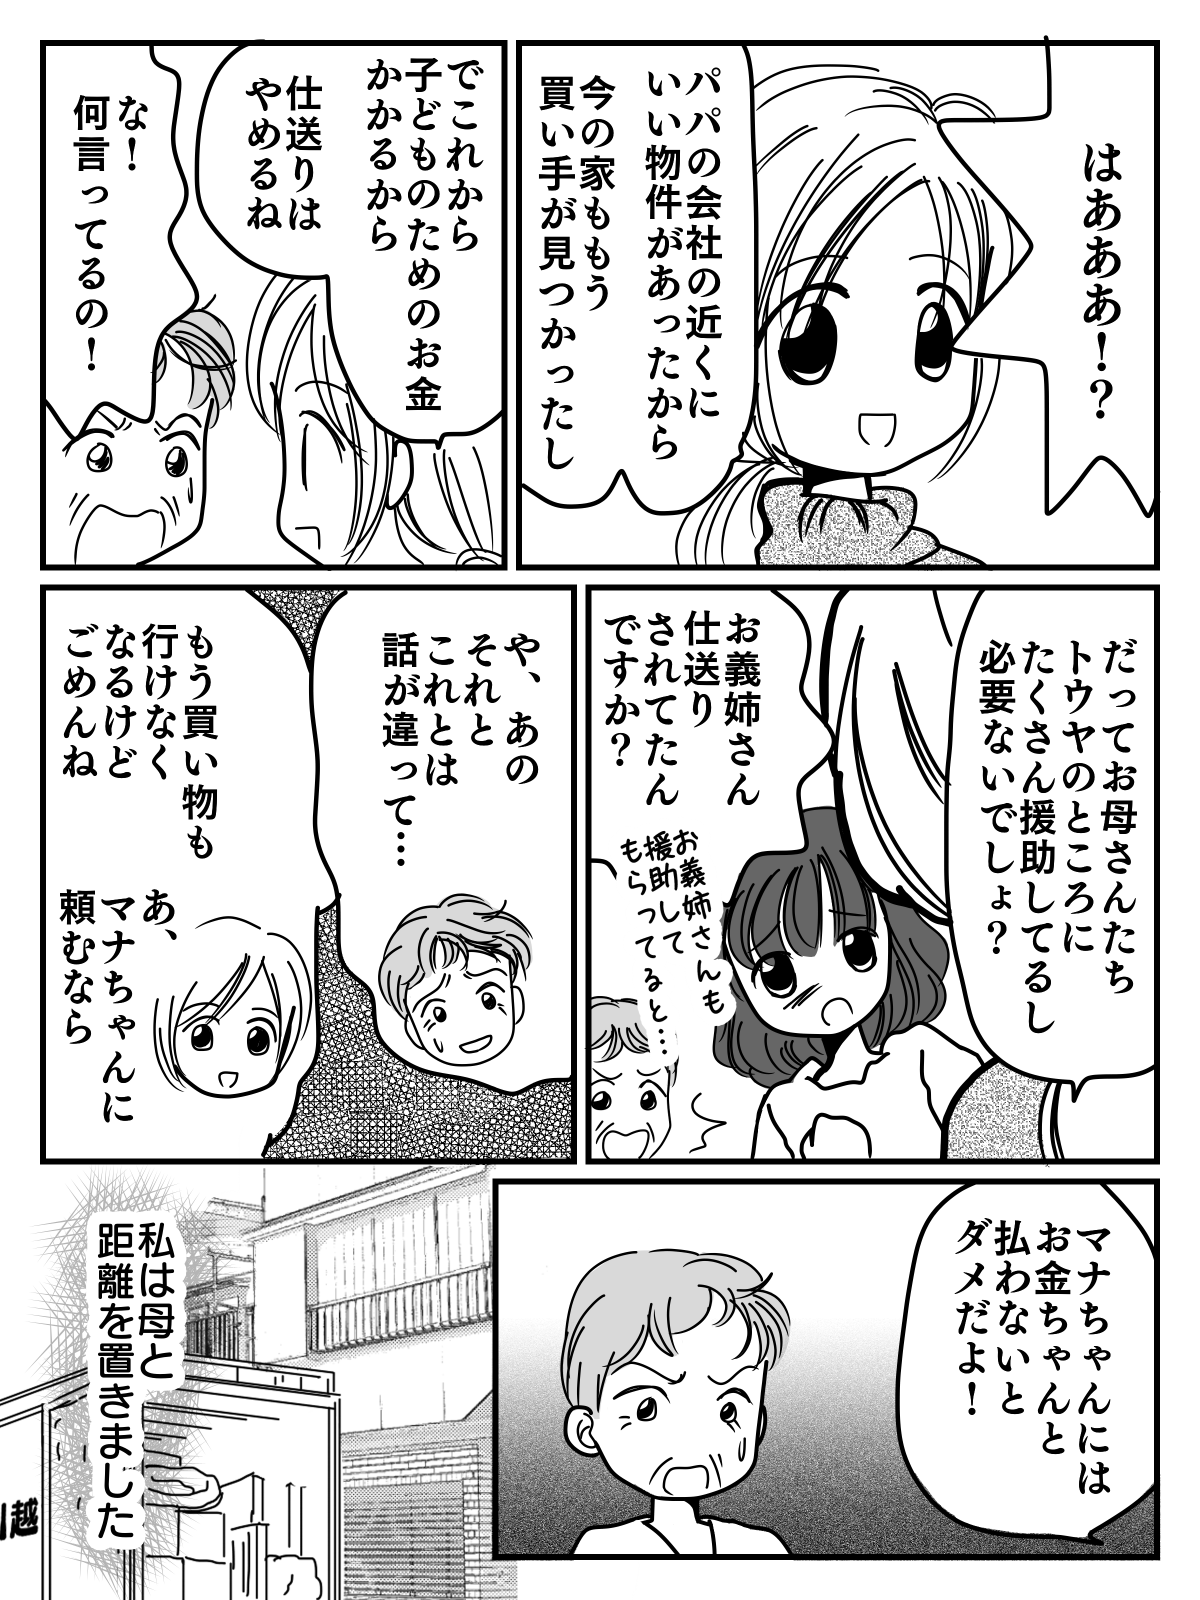 弟を優遇する親にモヤモヤ漫画3-3